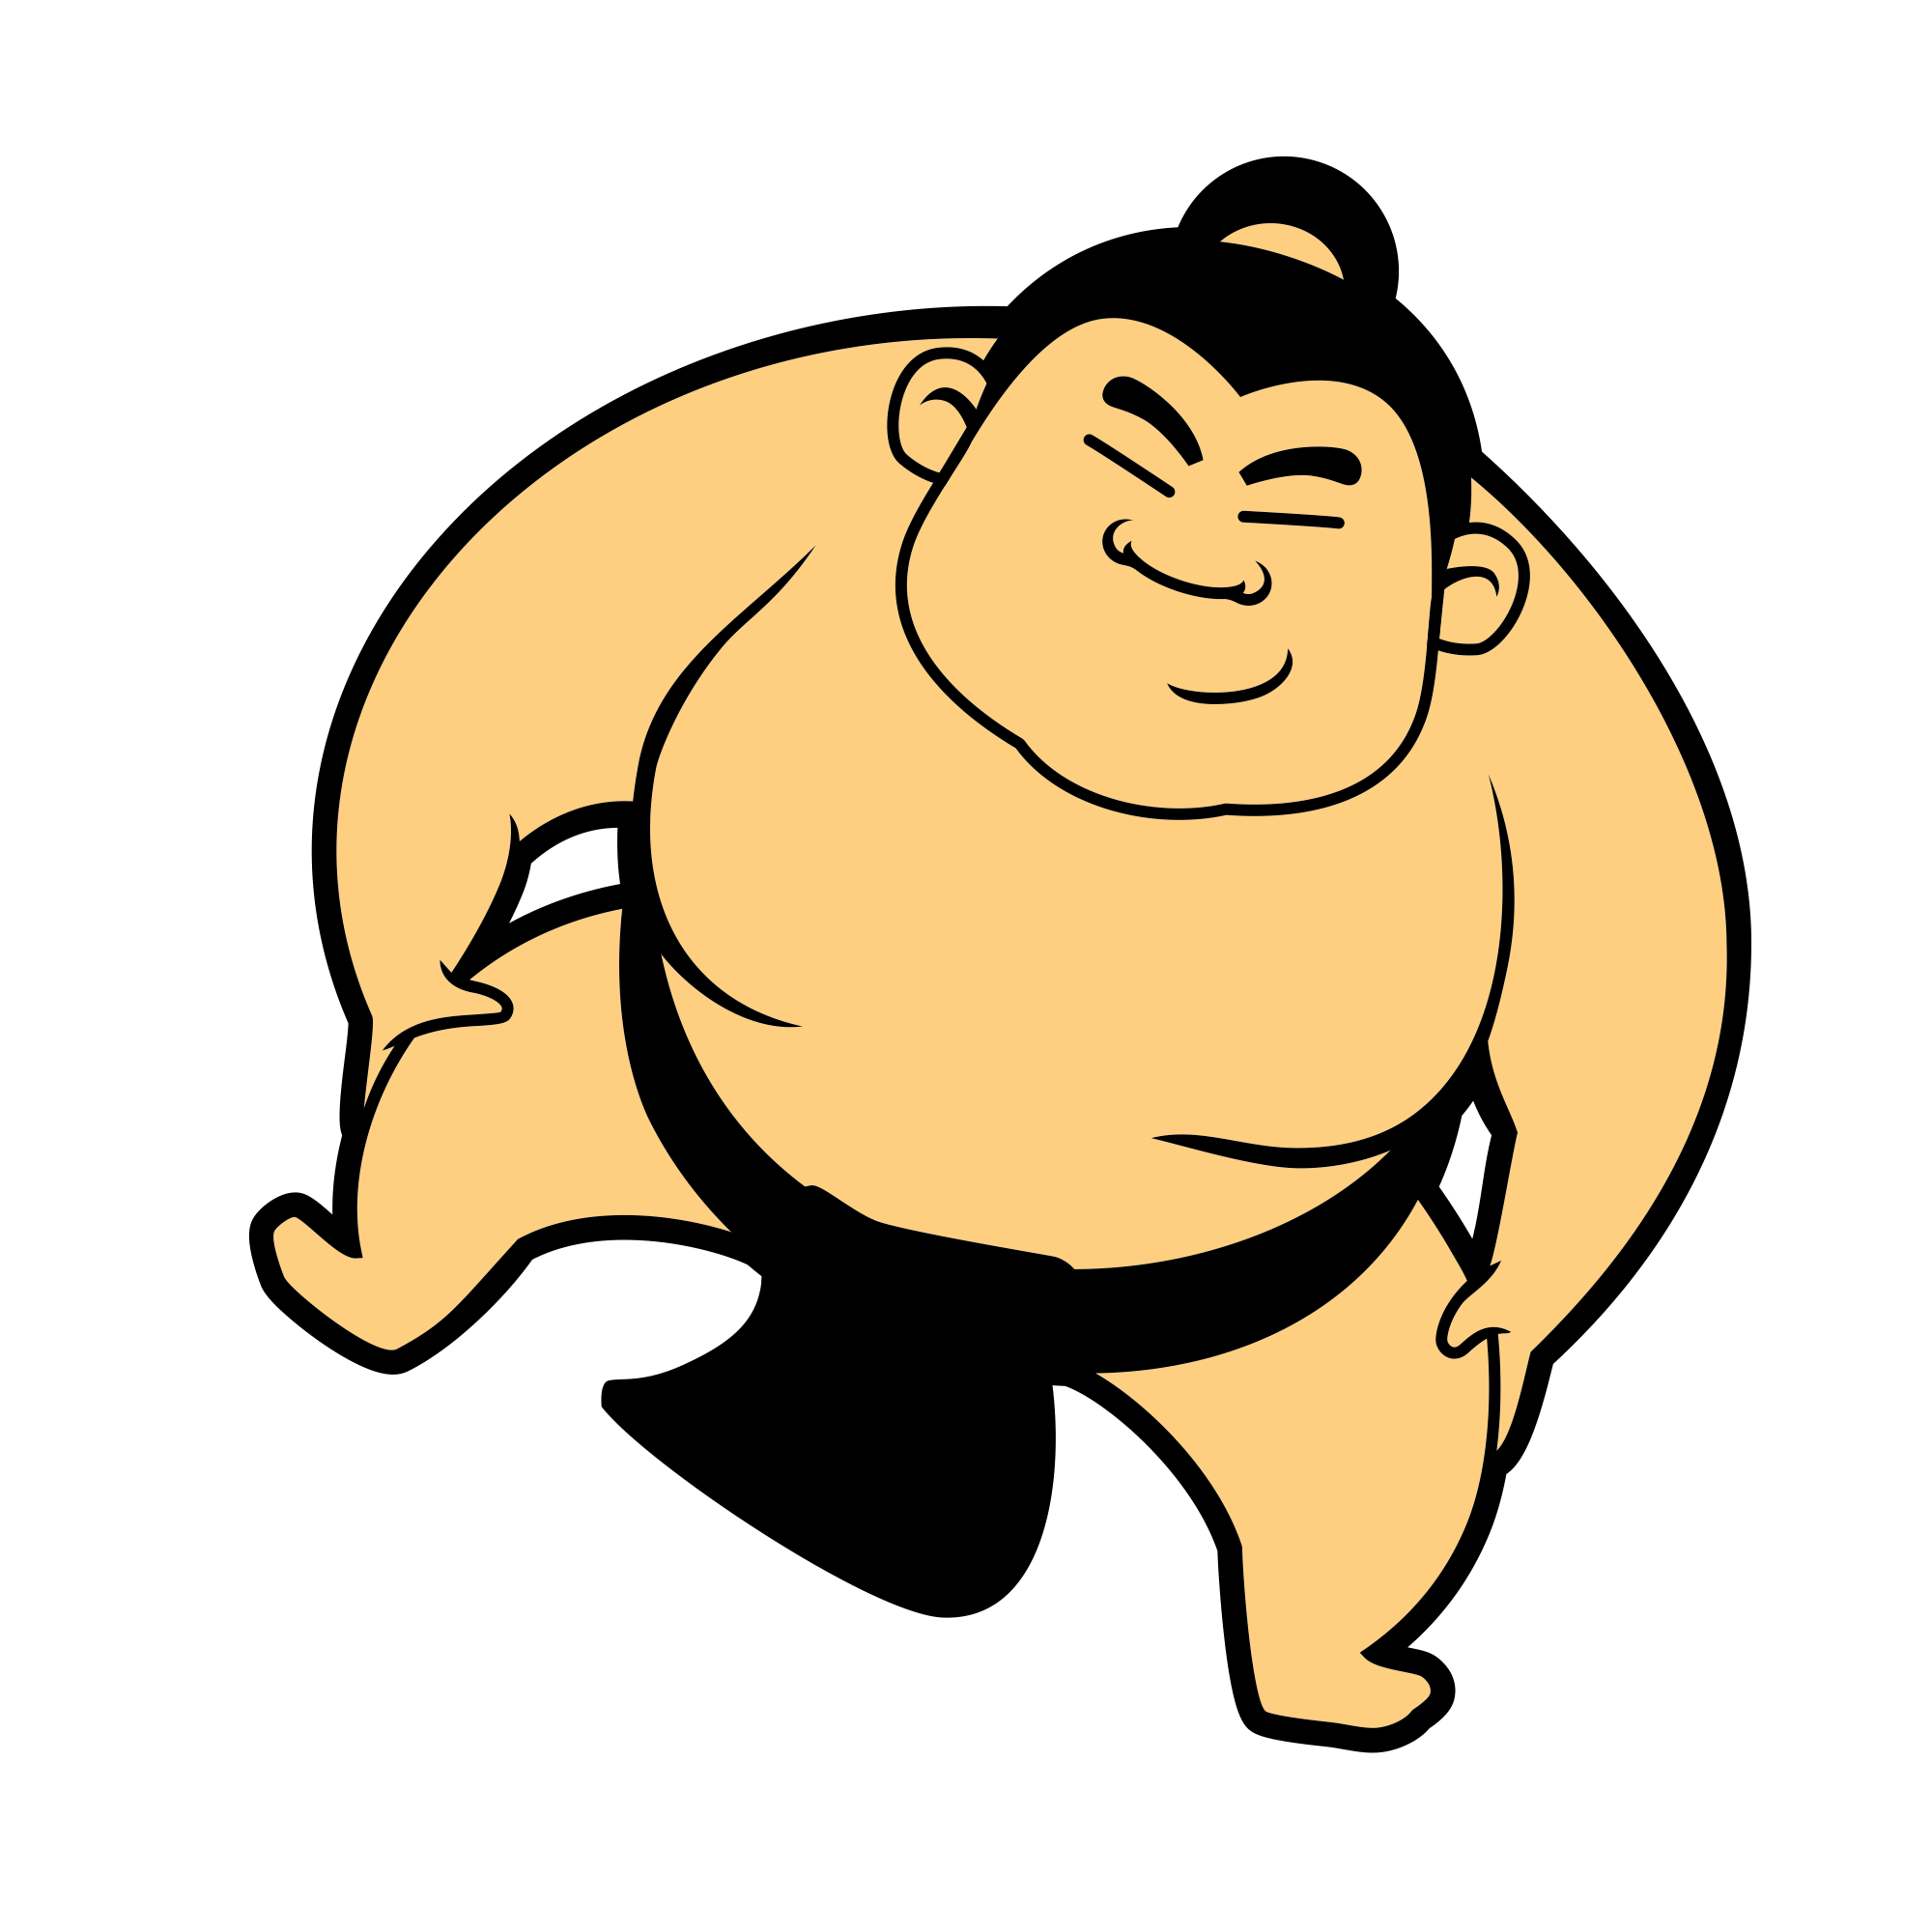 Sumo player, Sumo, Japanese M